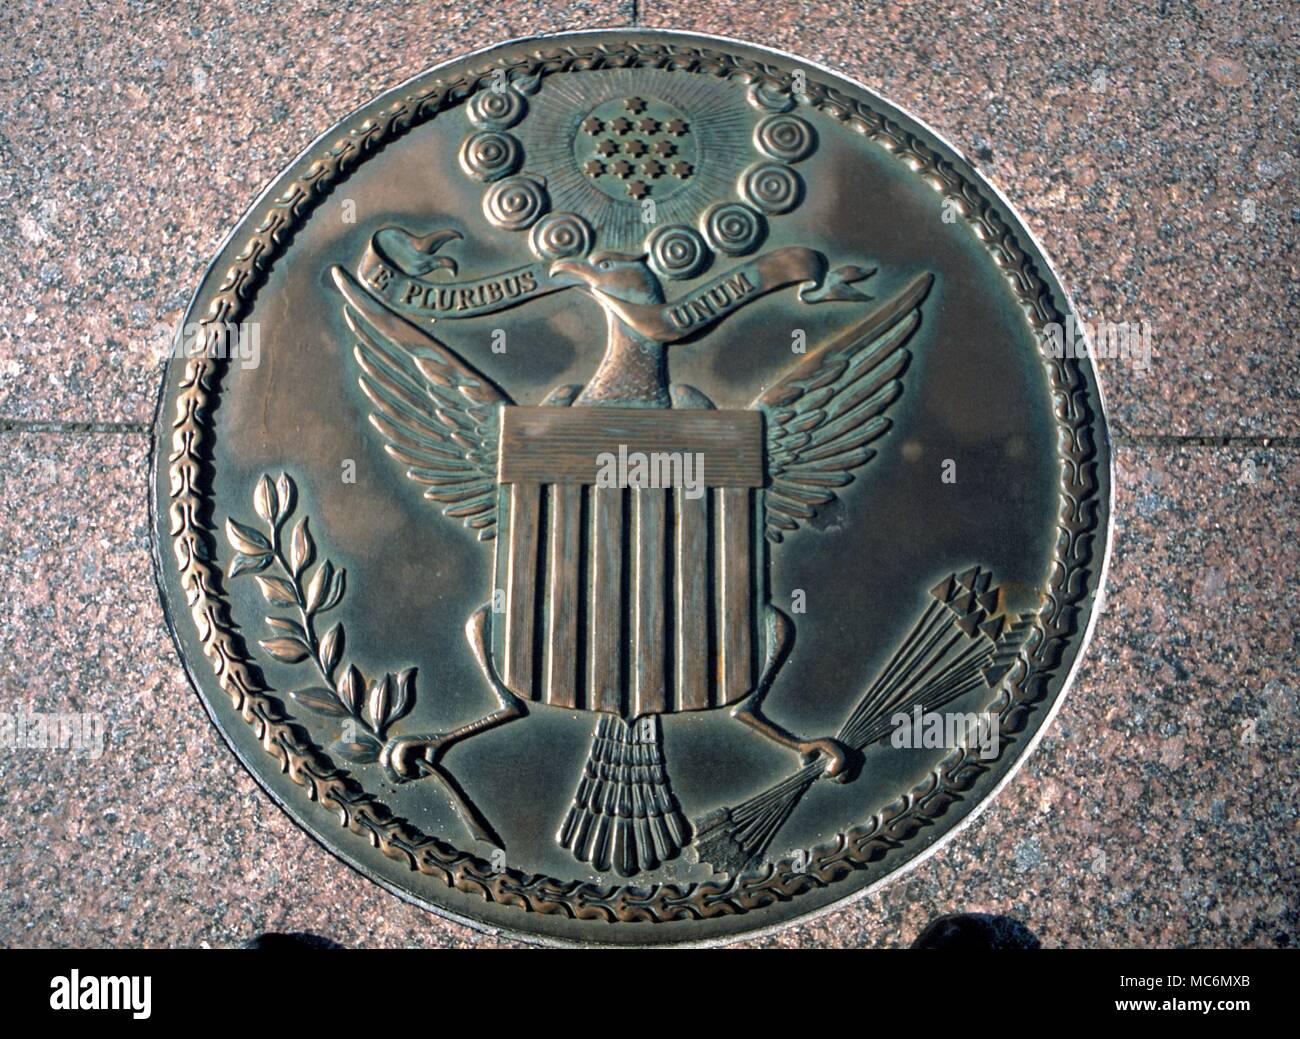 L'Histoire américaine - Joint l'avers du sceau des États-Unis d'Amérique (conception de circa 1802). Ce bronze est situé dans le pavé de la Freedom Plaza, dans Pennsylvania Avenue, Wahington DC. Banque D'Images